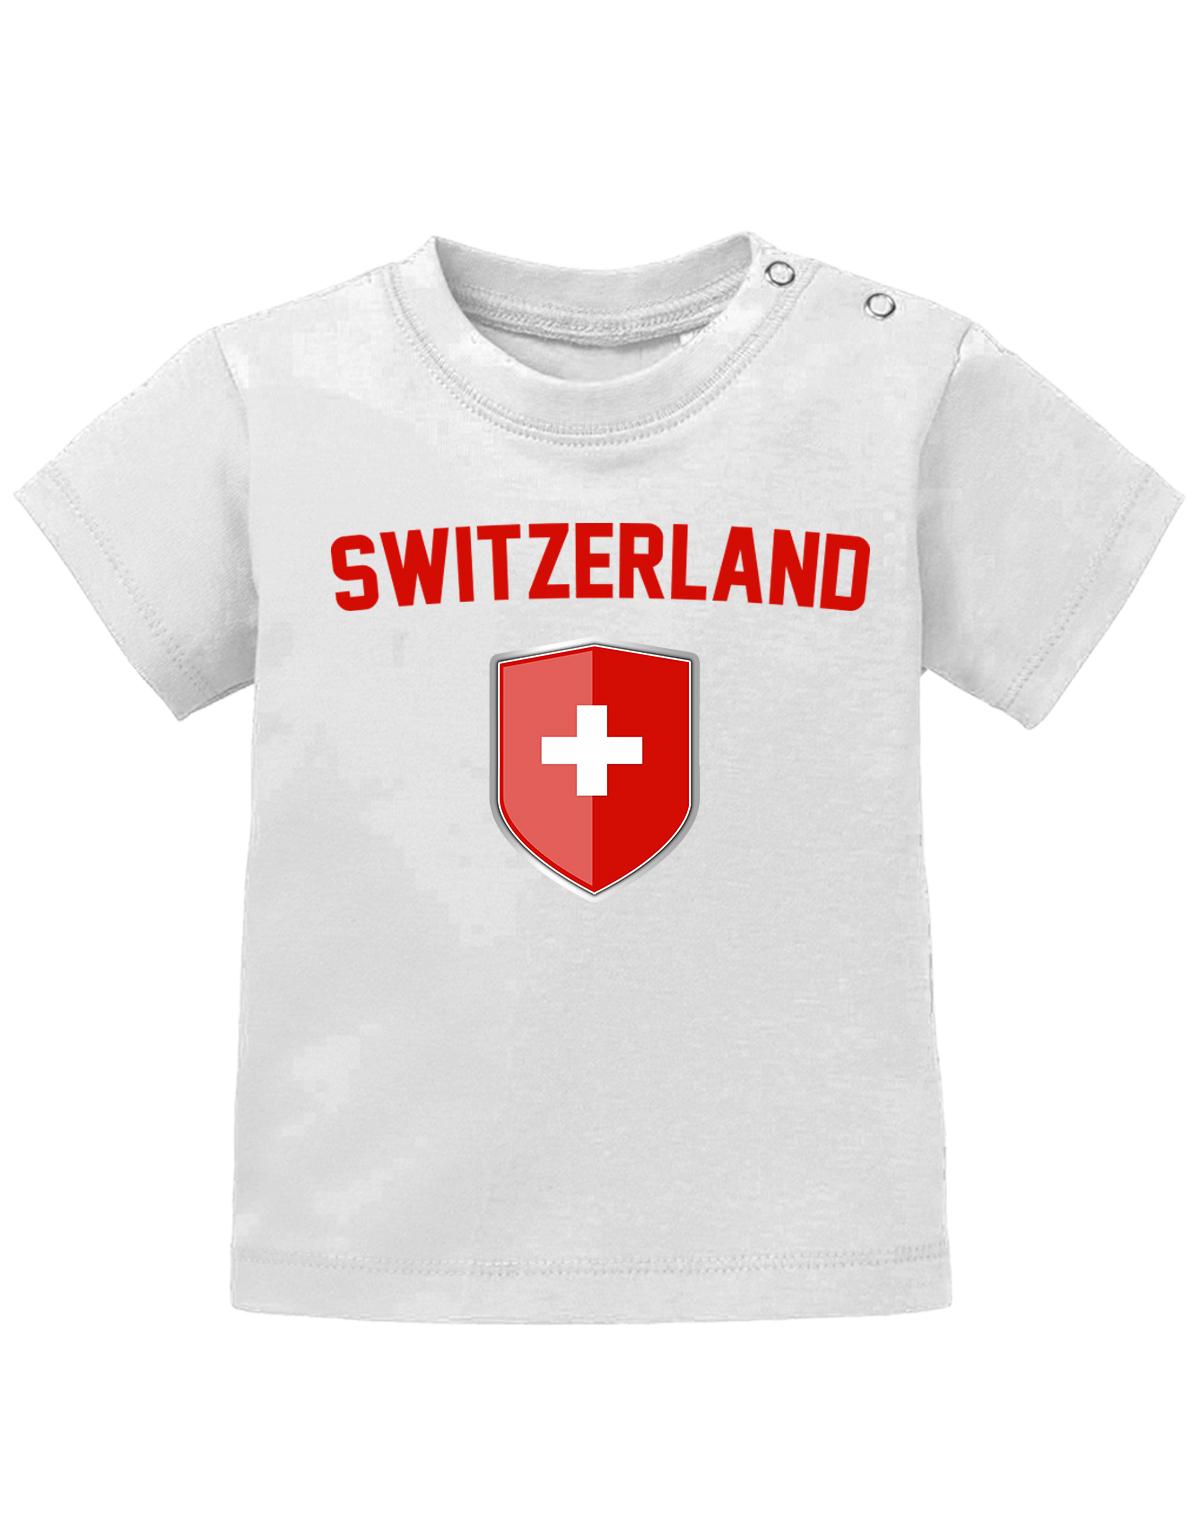 Switzerland-Wappen-Mitte-Baby-Weiss